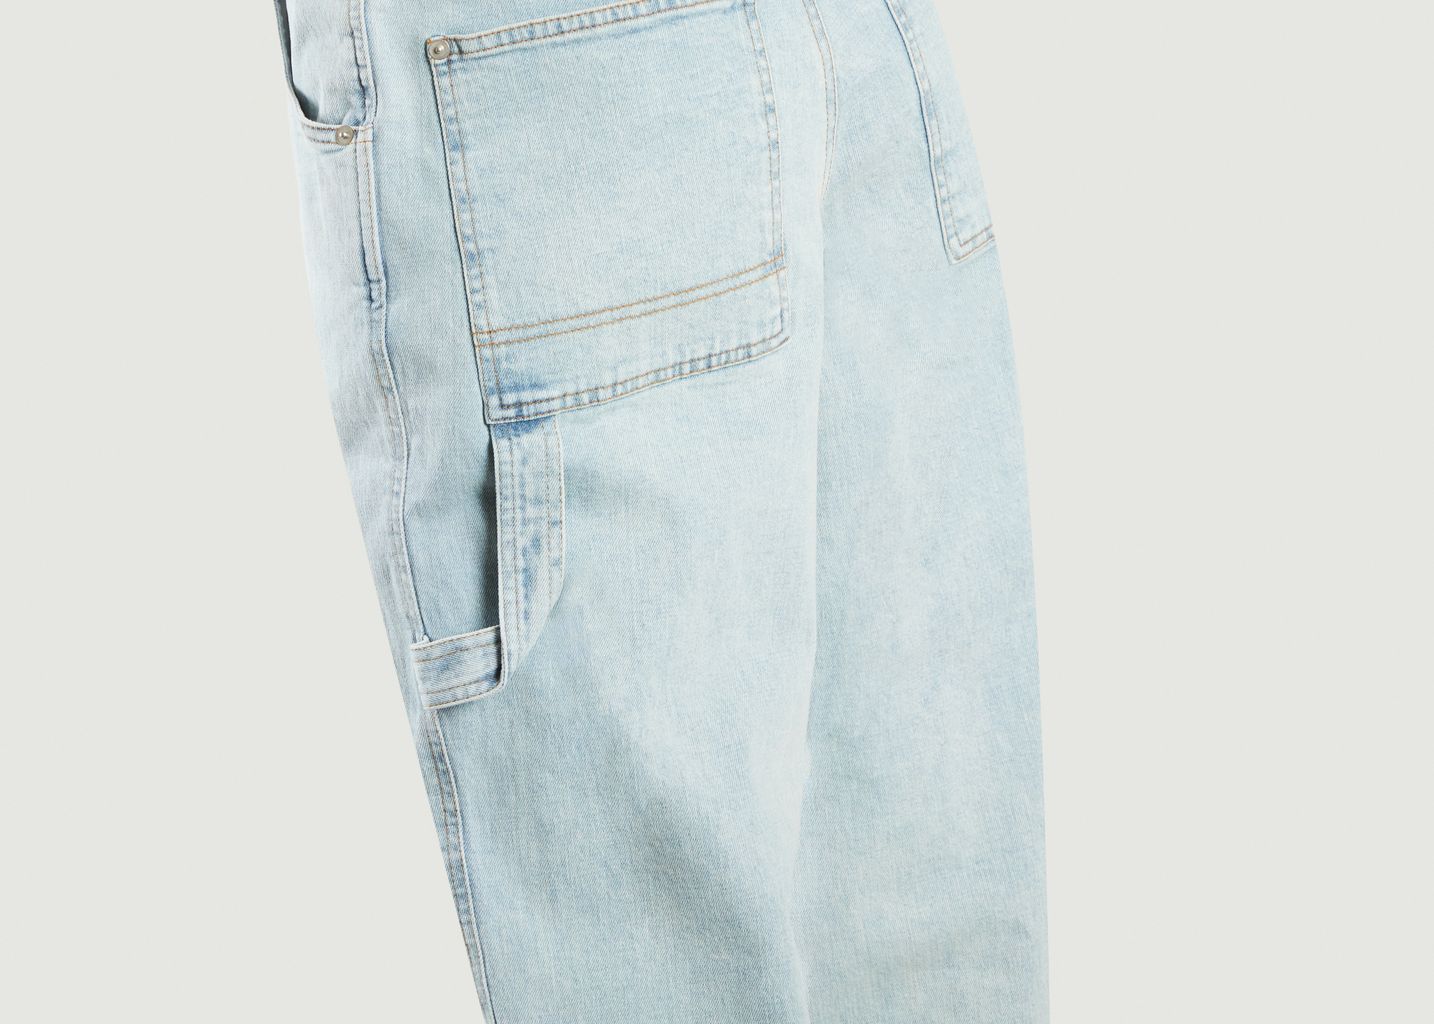 PXL denim jeans - Façon Jacmin